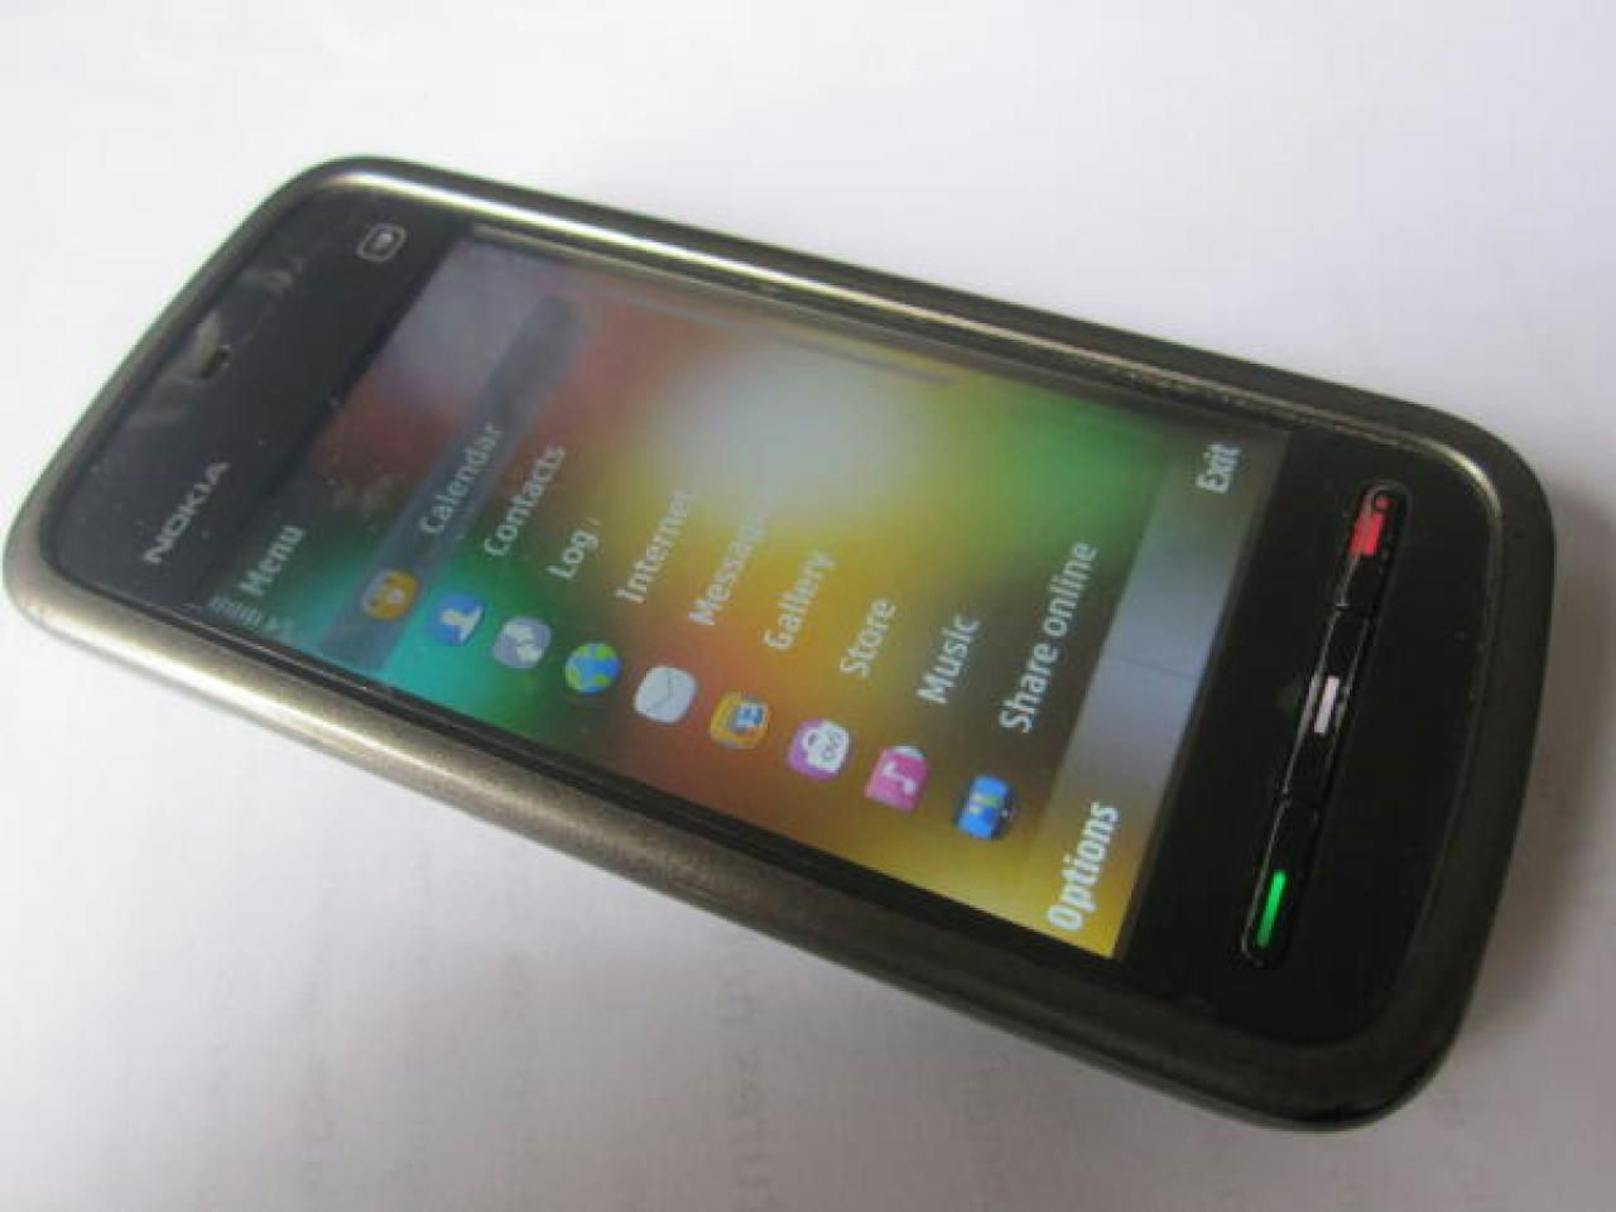 Beim Smartphone soll es sich um ein Nokia 5233 gehandelt haben. Das Modell aus dem Jahr 2010 wird in Indien immer noch verkauft, möglicherweise aber nicht mehr mit allen Originalteilen.